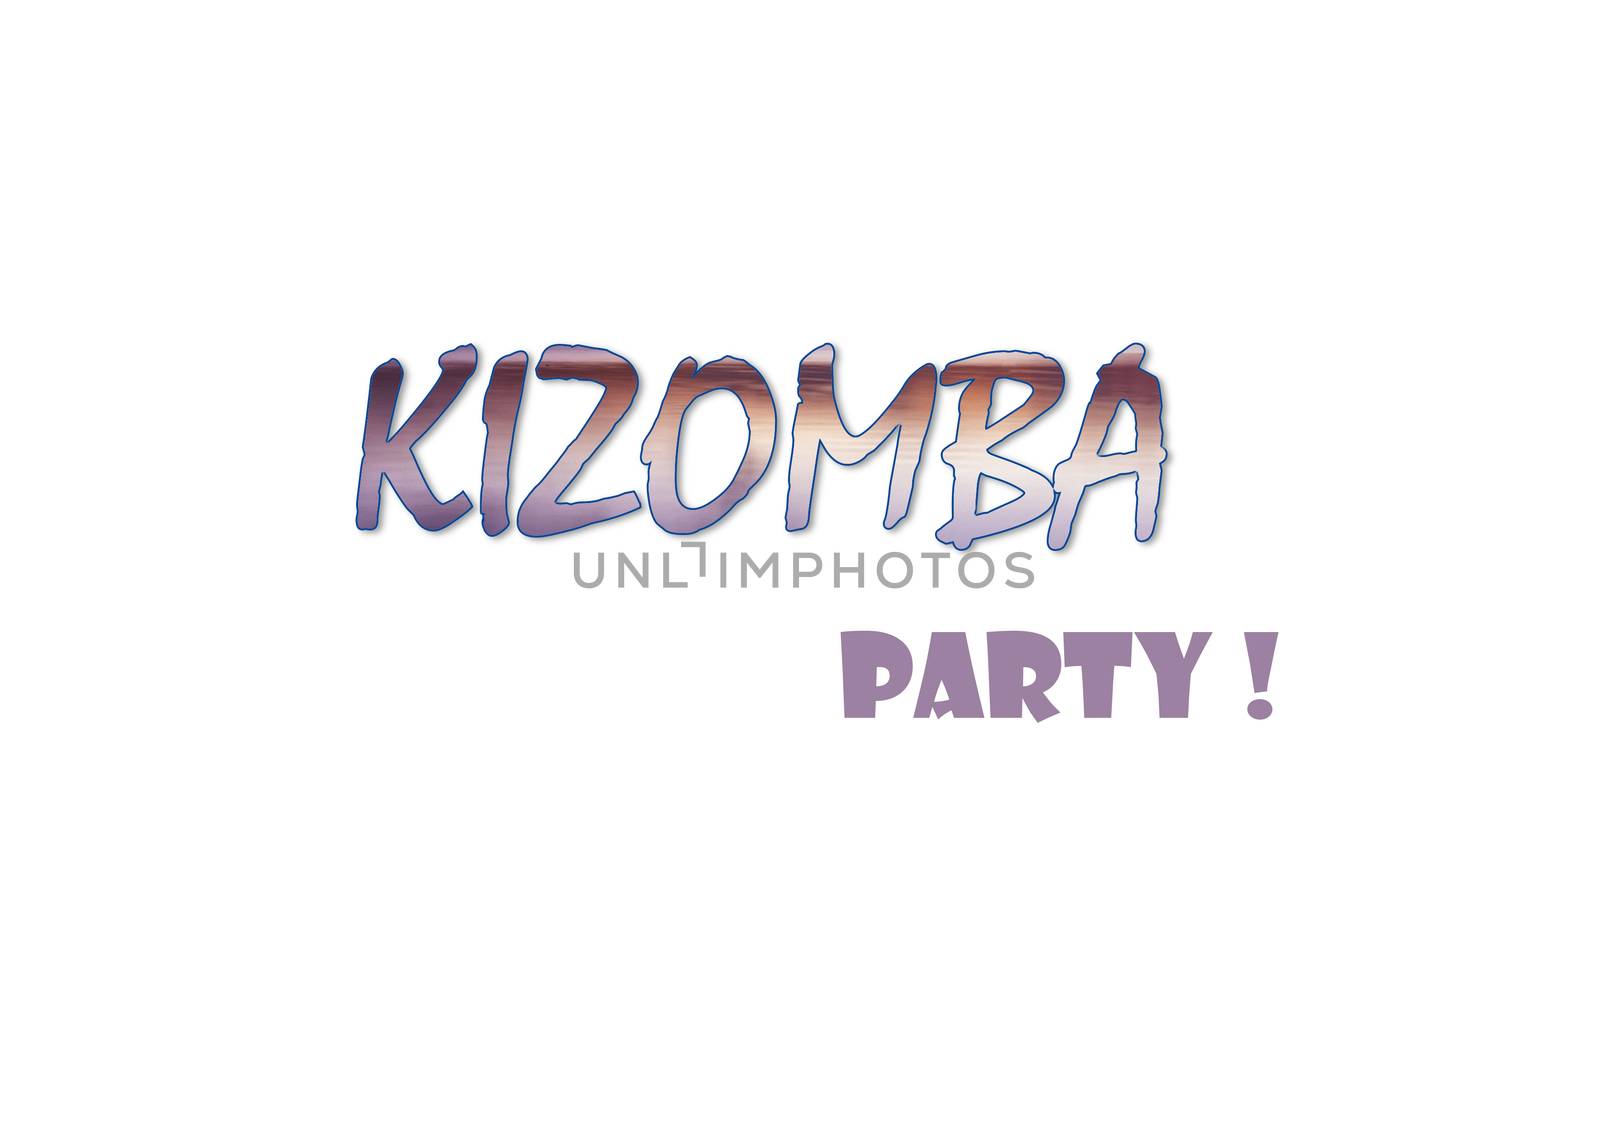 Kizomba party illustration  by EdVal